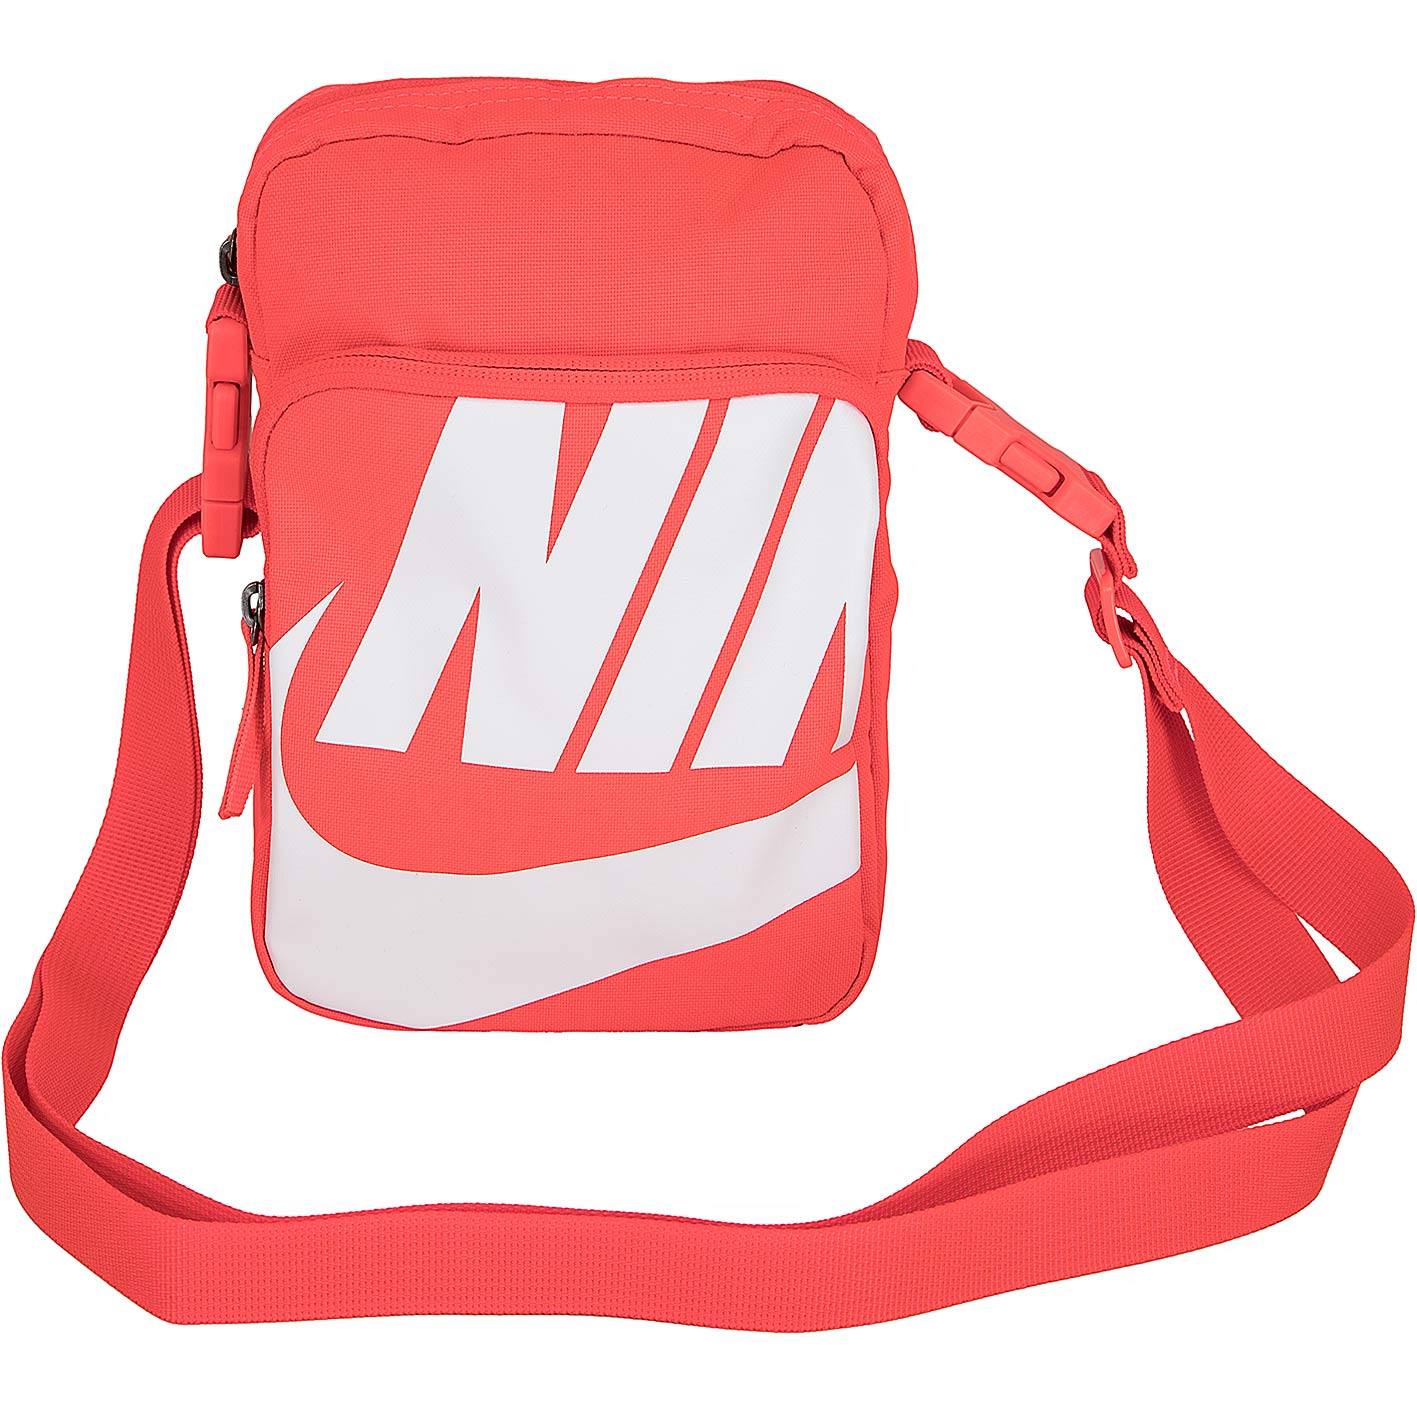 ☆ Nike Mini Tasche Heritage 2.0 neon orange/weiß - hier bestellen!